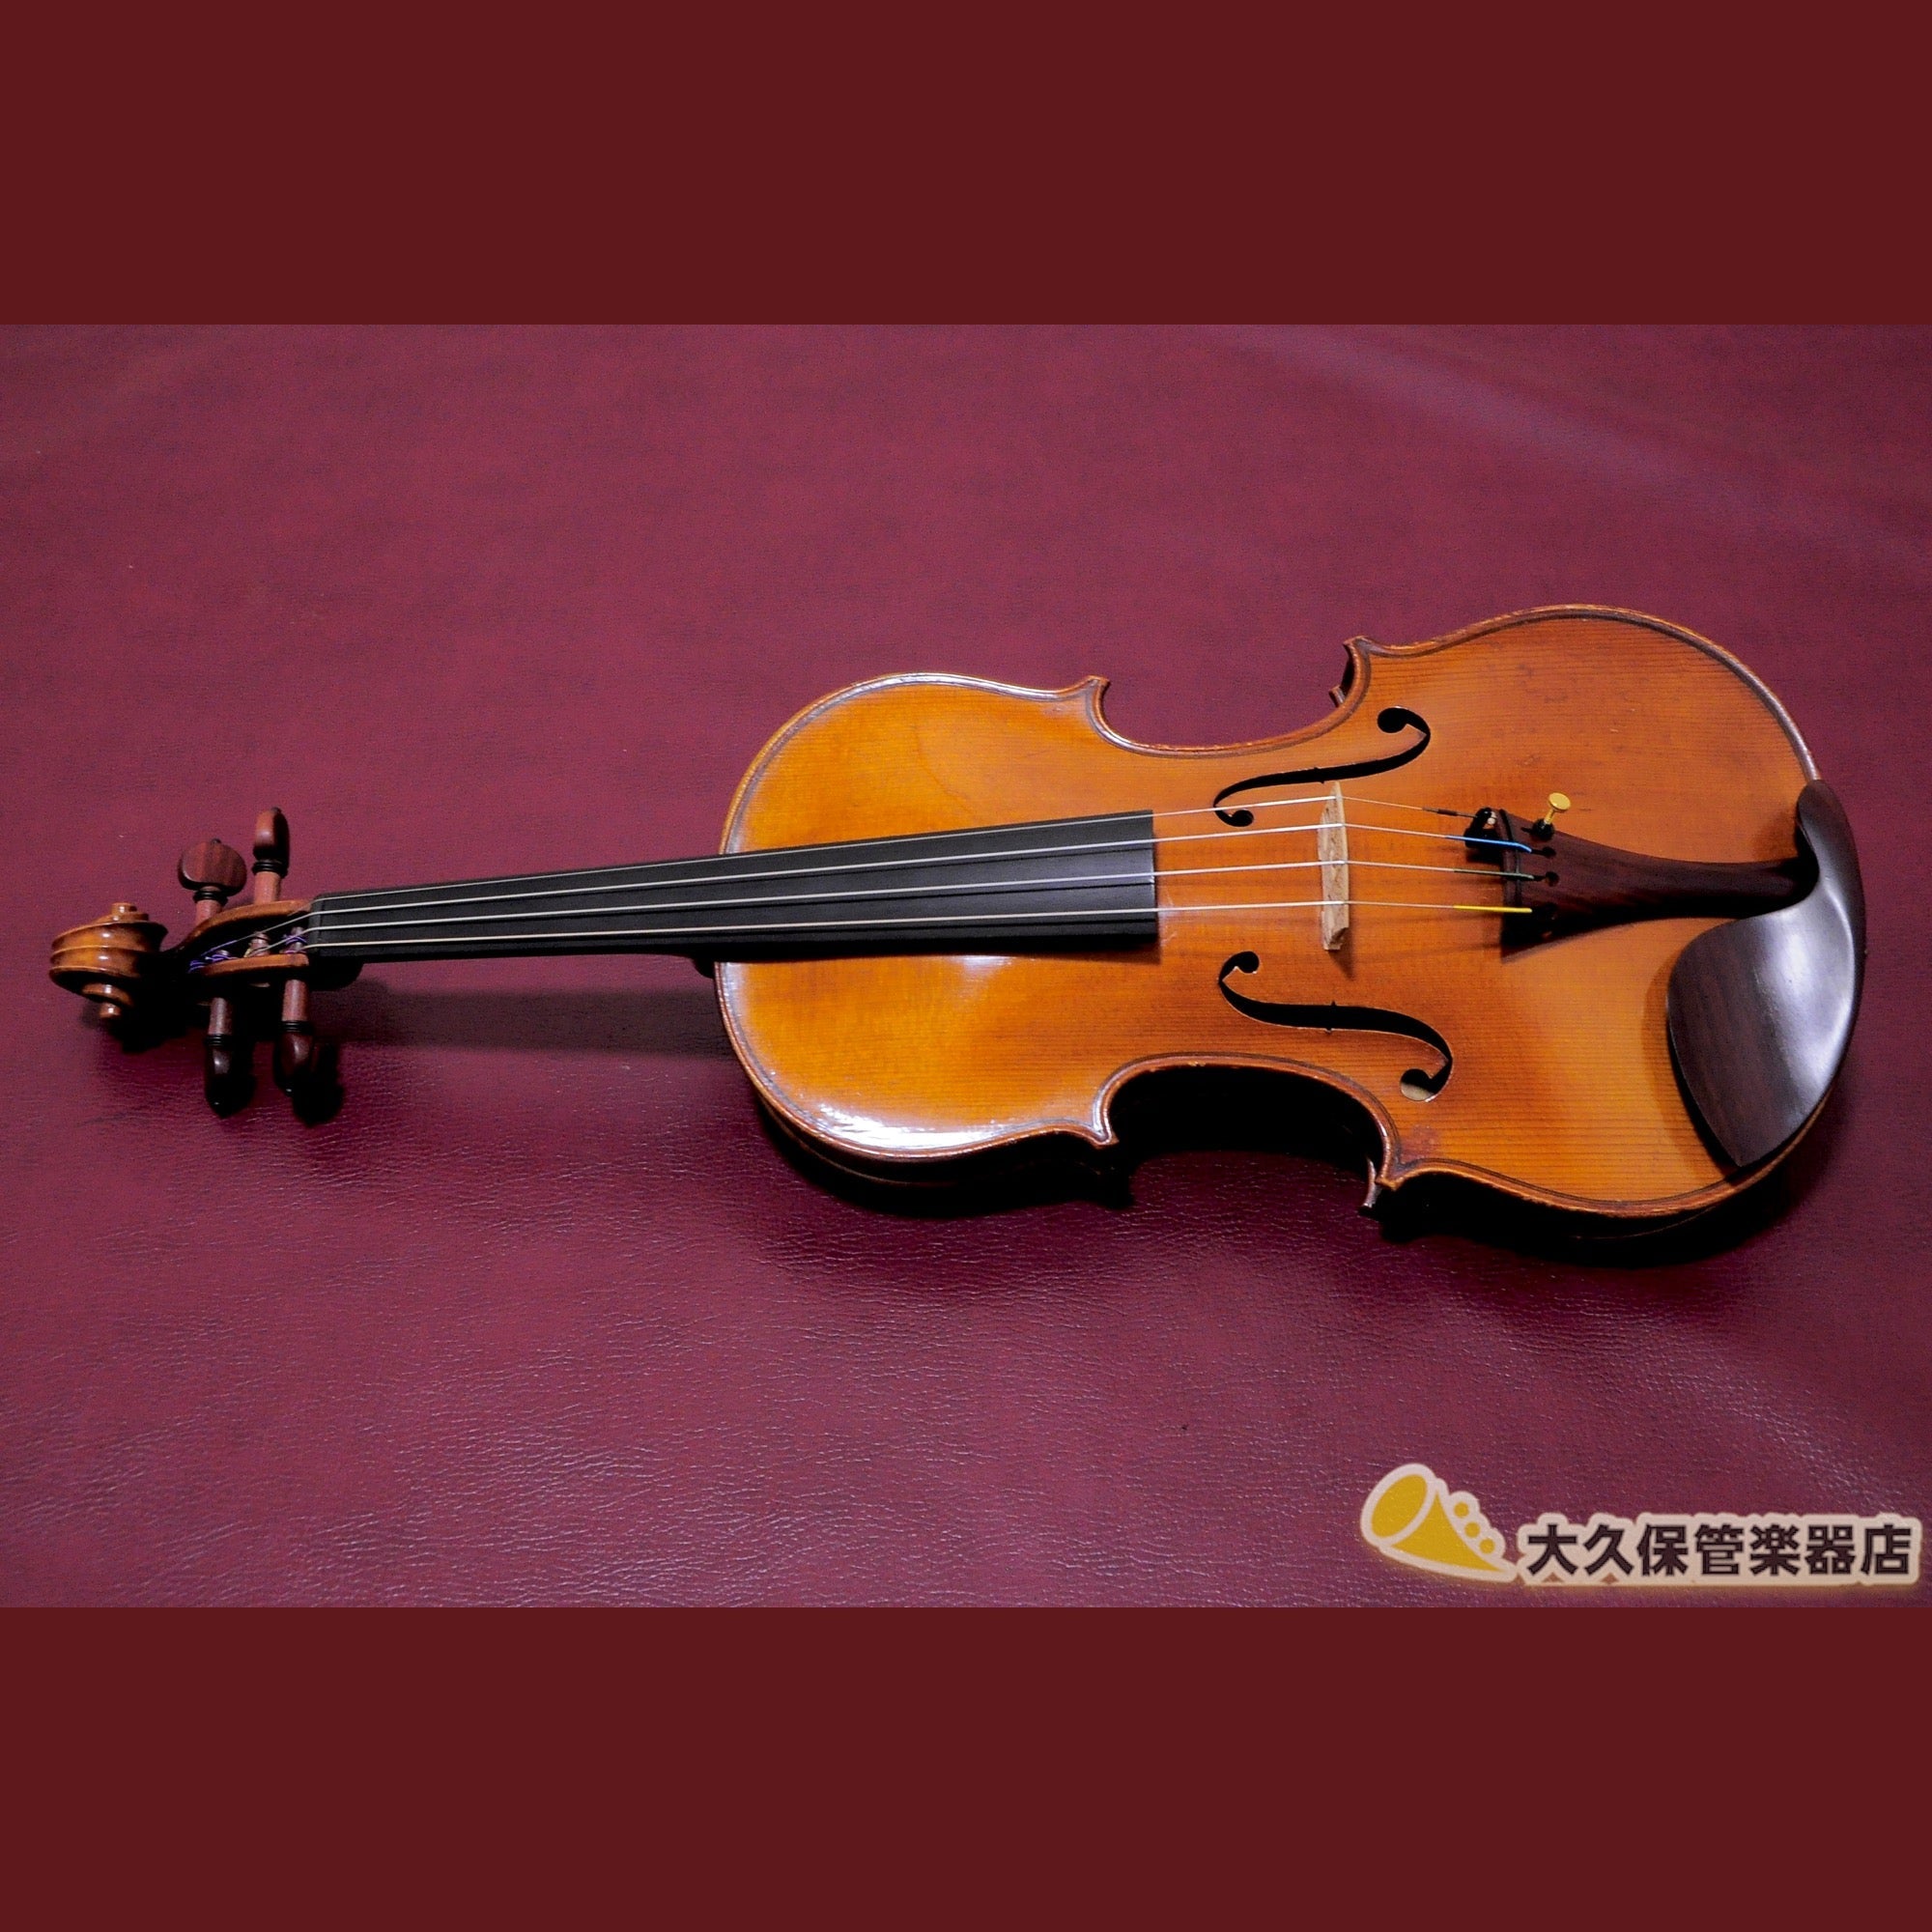 グラニエ+1935　4/4+バイオリン+-+TC楽器+-+TCGAKKI